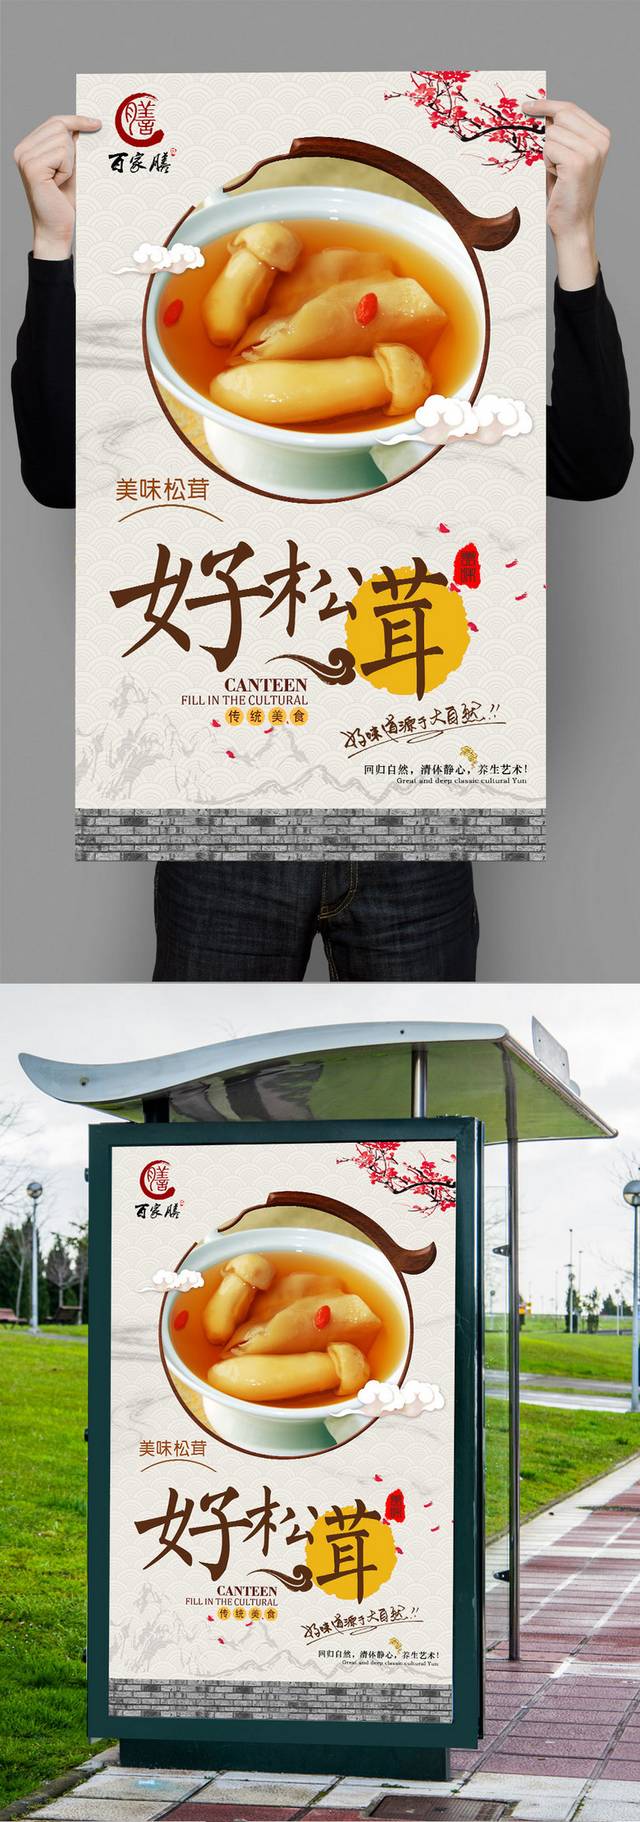 中式松茸宣传海报设计